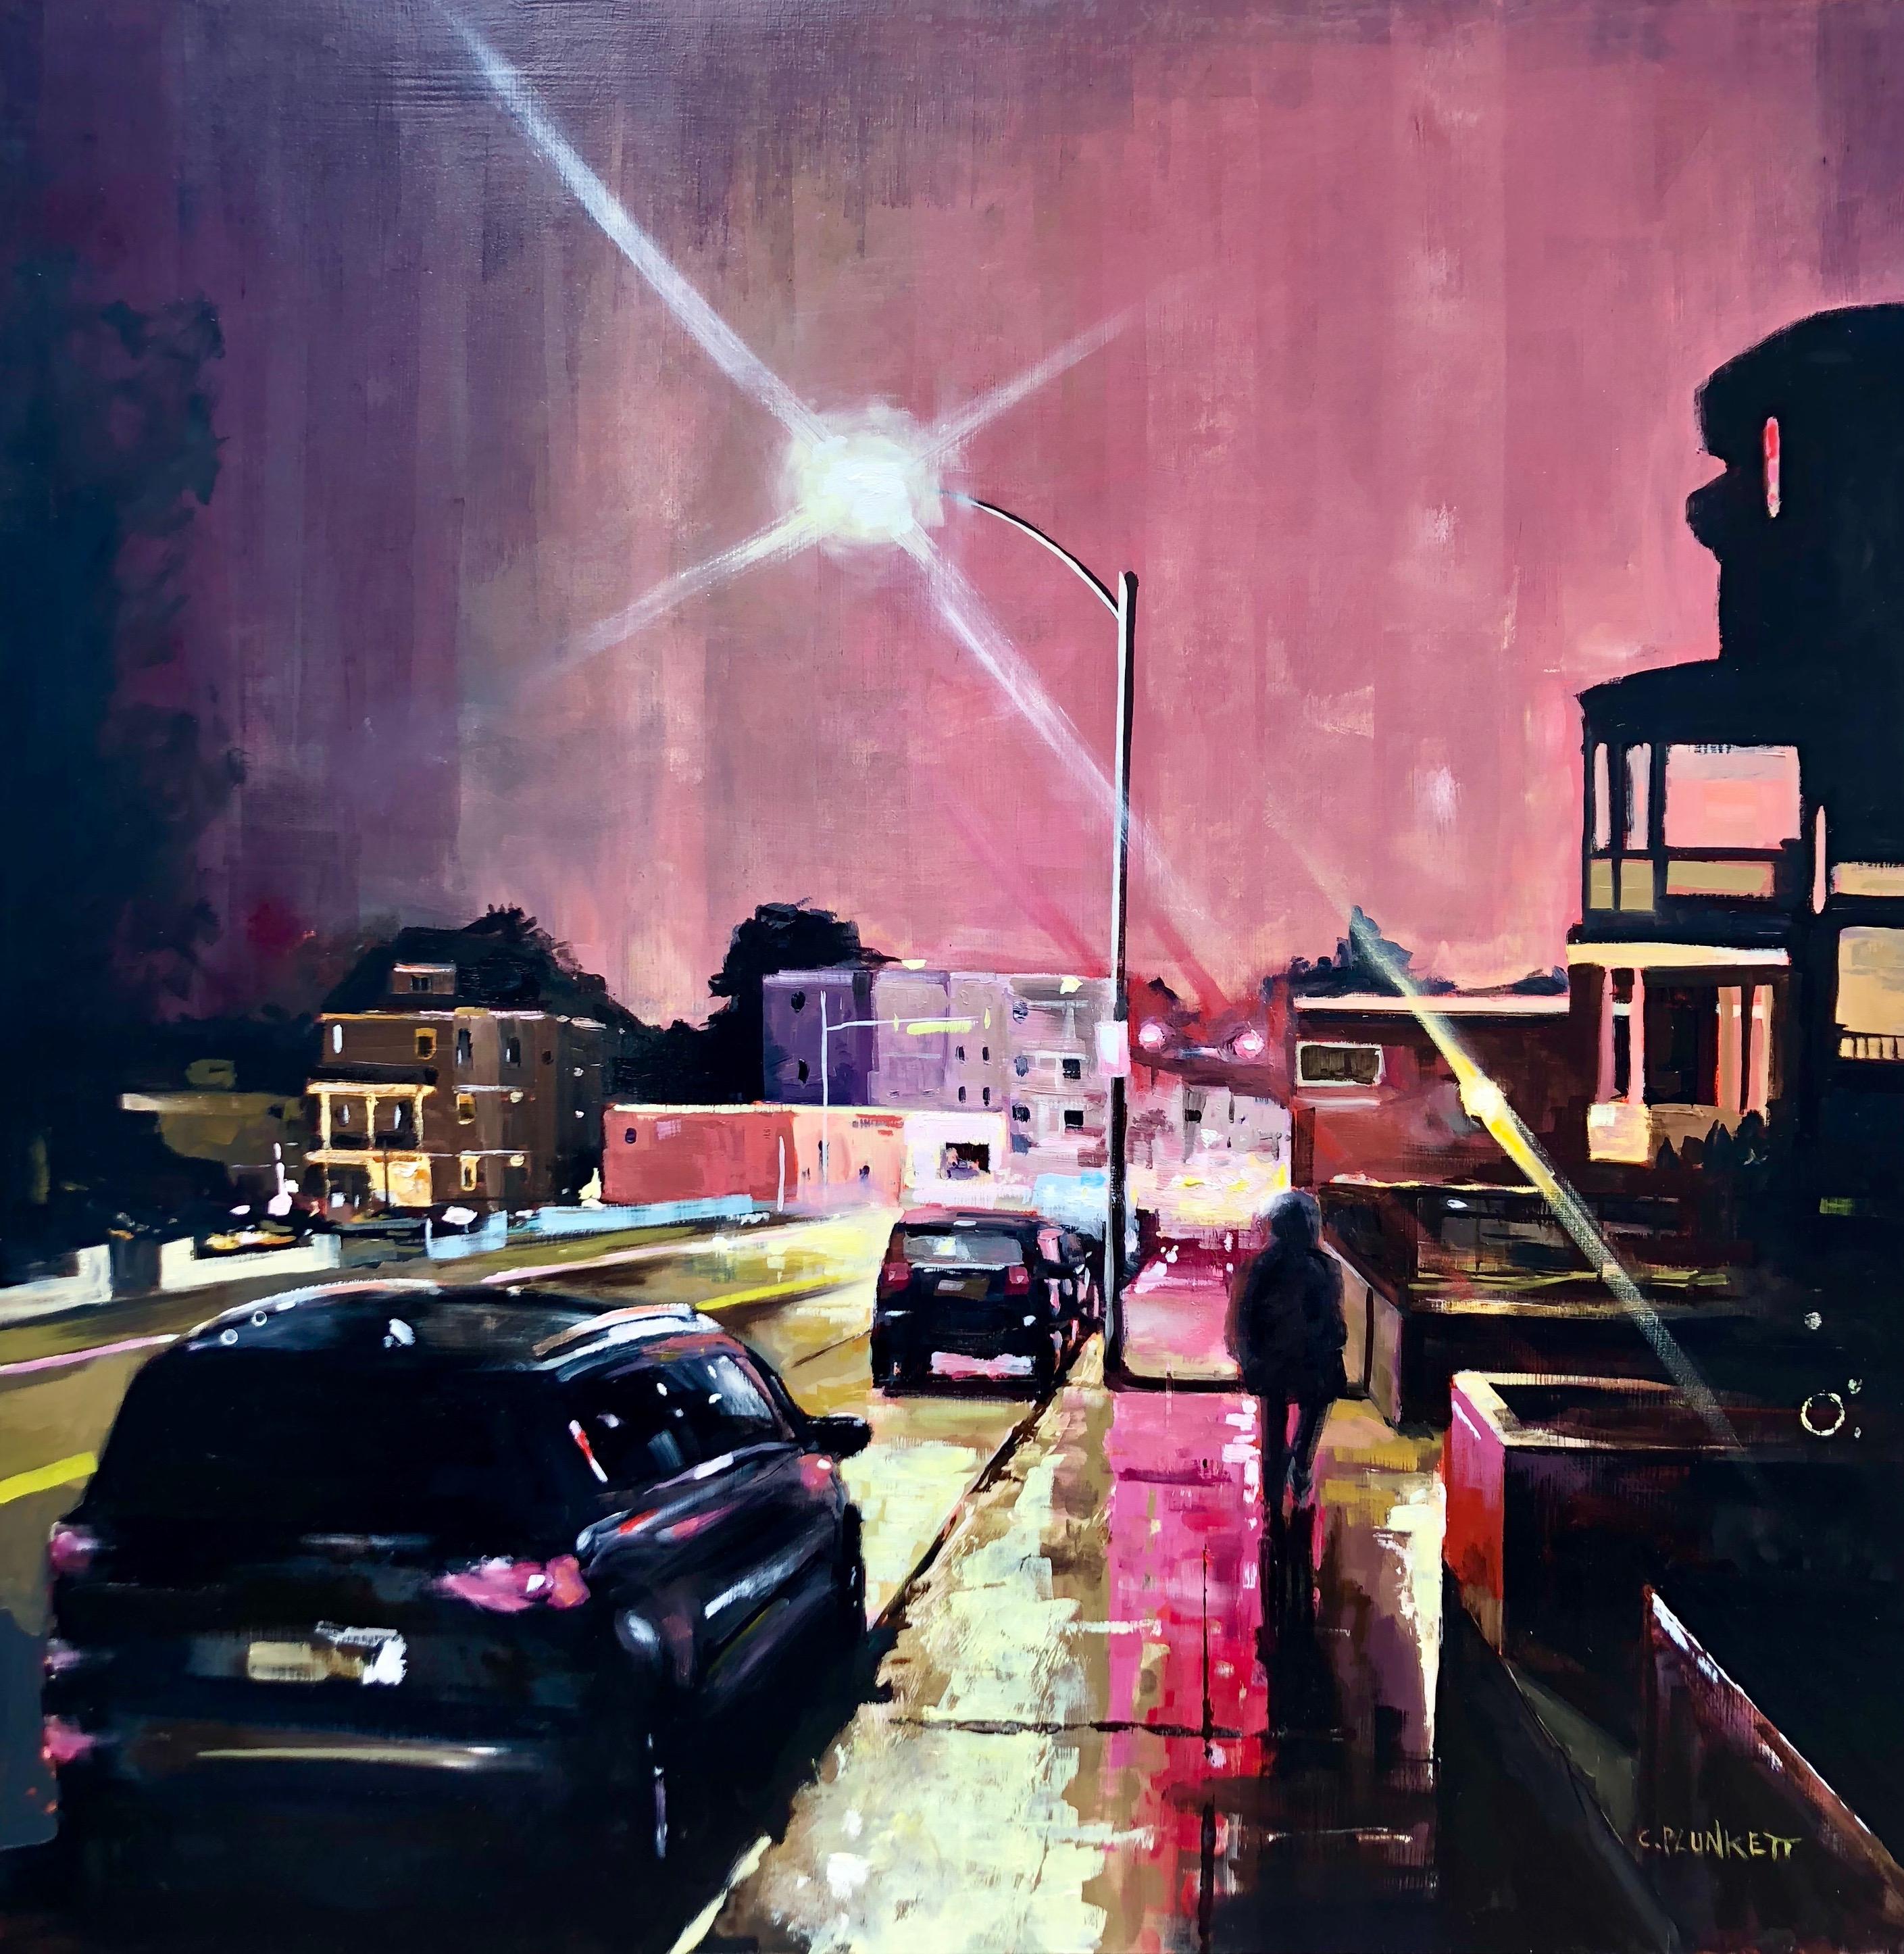 "Walking Up Adams", paysage urbain, nuit, rouge, noir, peinture à l'huile - Painting de Chris Plunkett